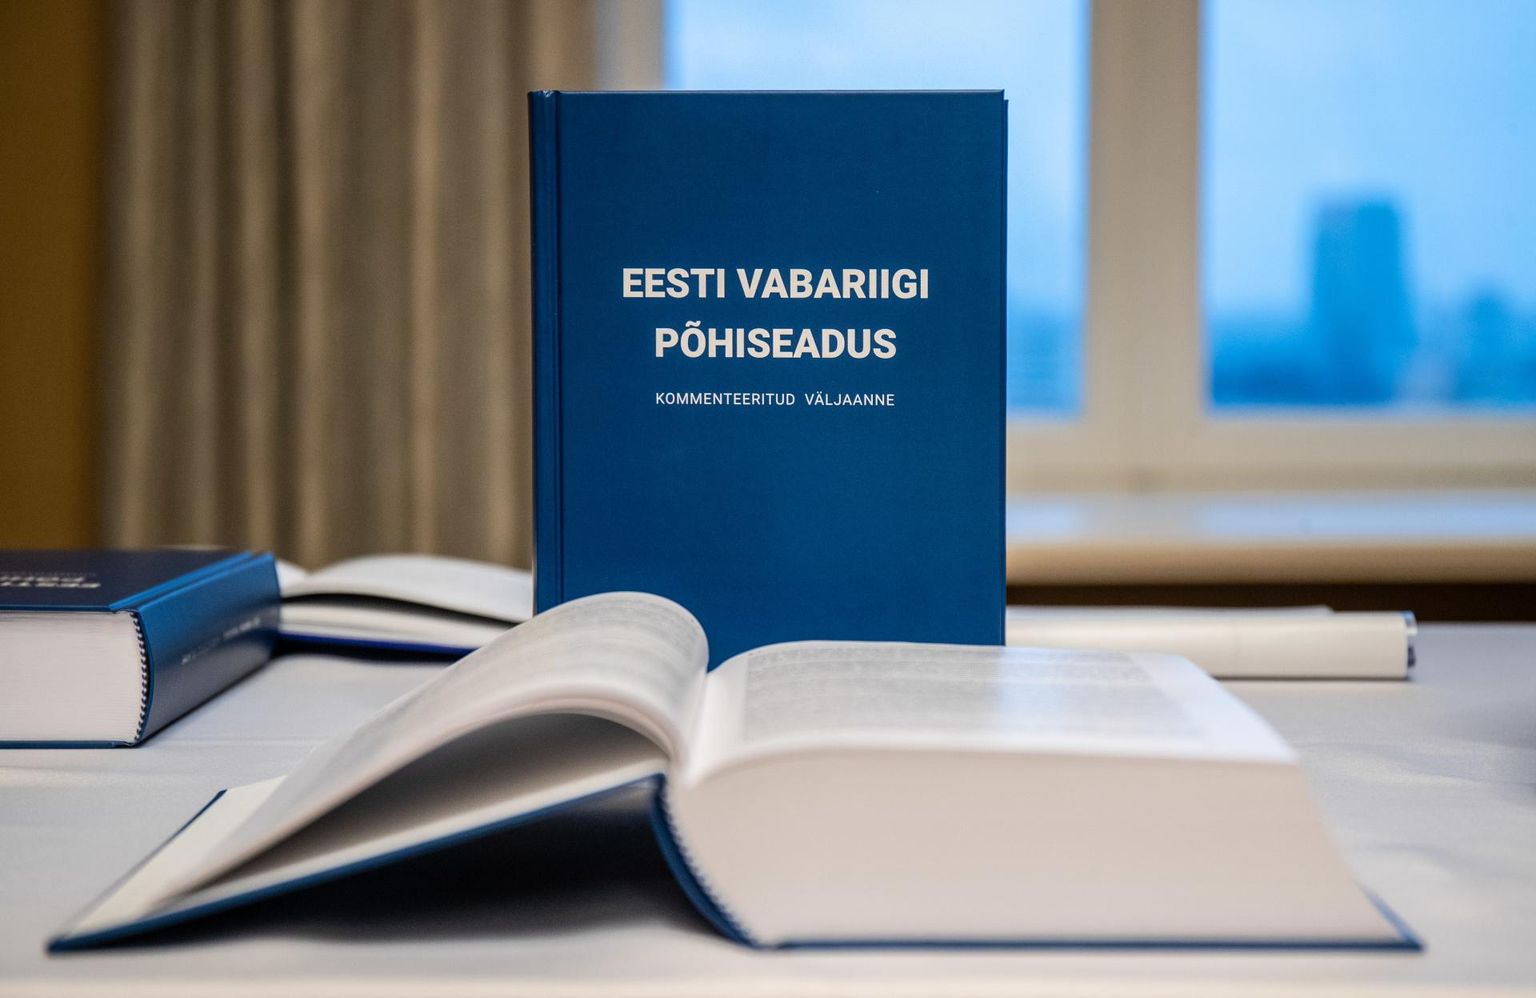 Eesti vabariigi põhiseaduse kommenteeritud väljaanne. Pilt illustratiivne